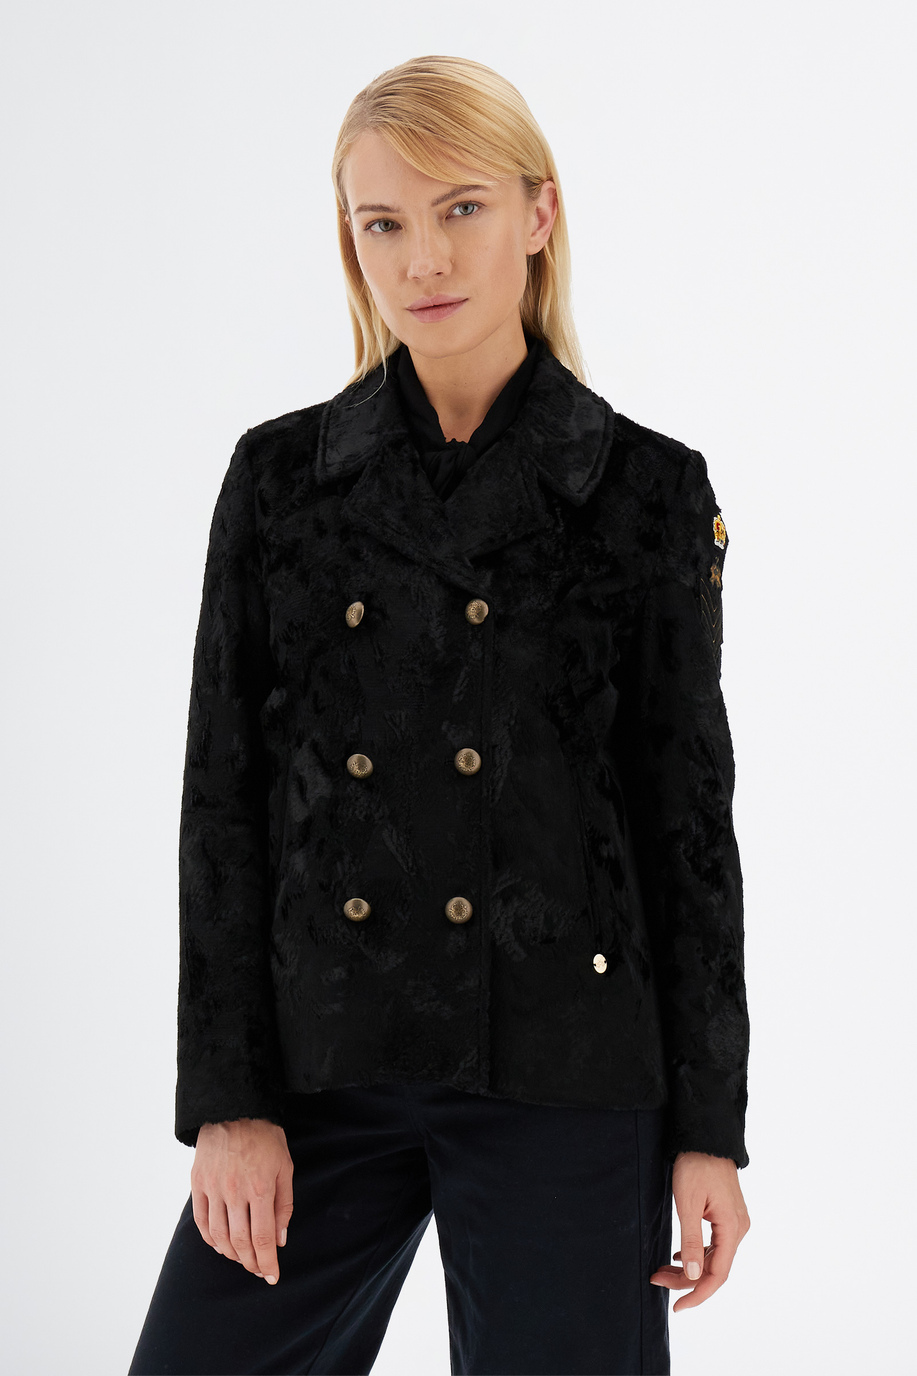 Damen Langarm England Jacke mit Pelz - Eleganter Look für sie | La Martina - Official Online Shop